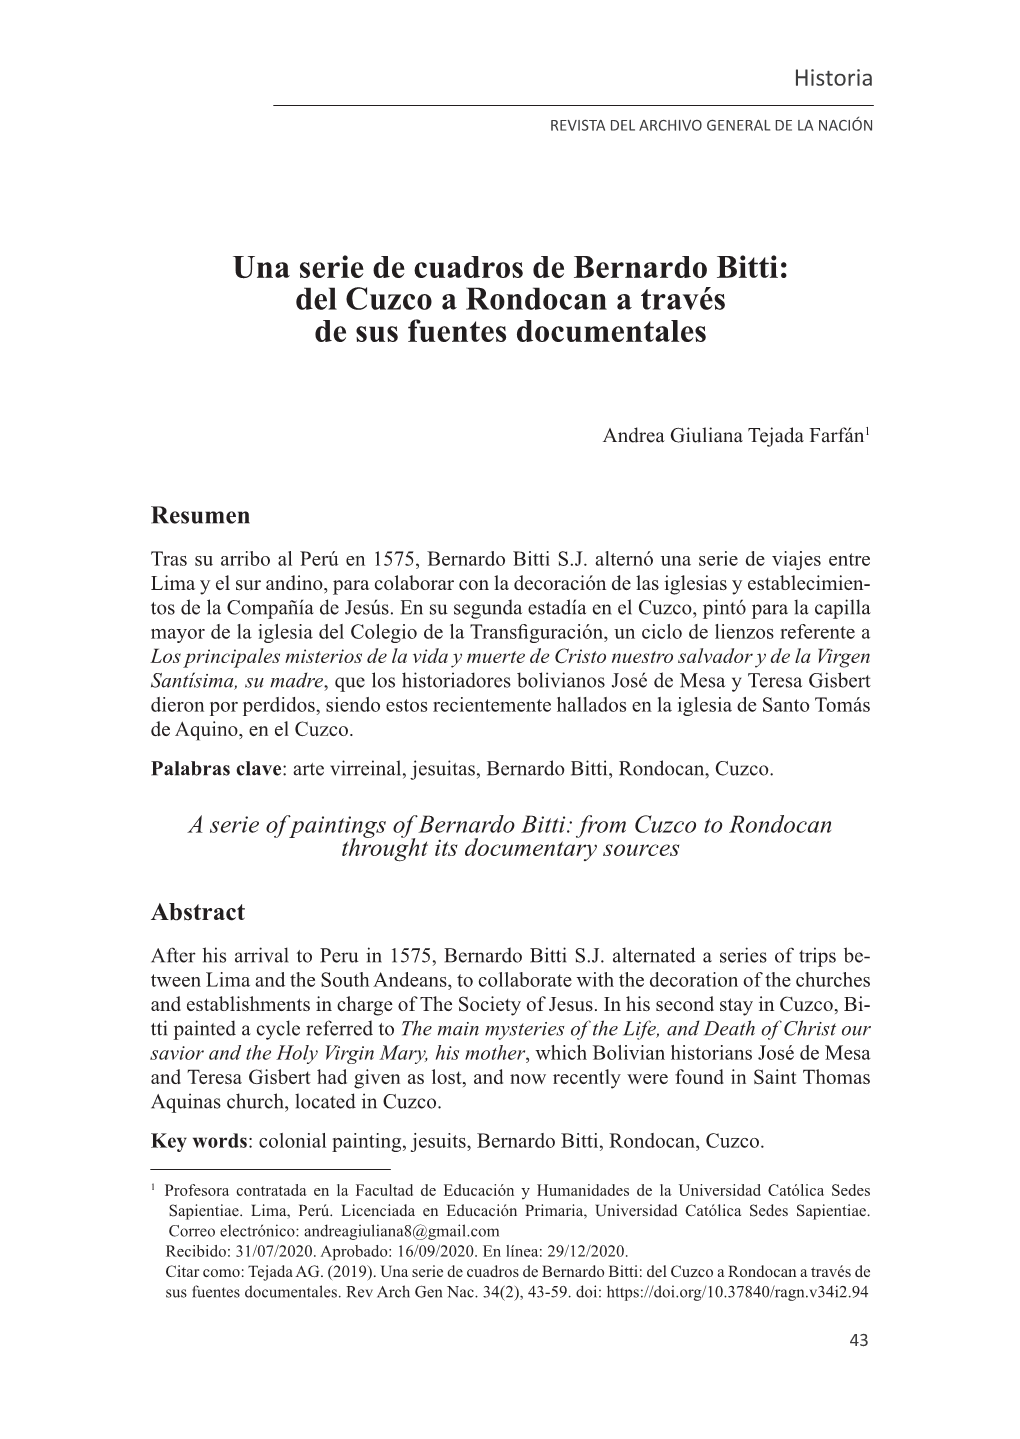 Una Serie De Cuadros De Bernardo Bitti: Del Cuzco a Rondocan a Través De Sus Fuentes Documentales